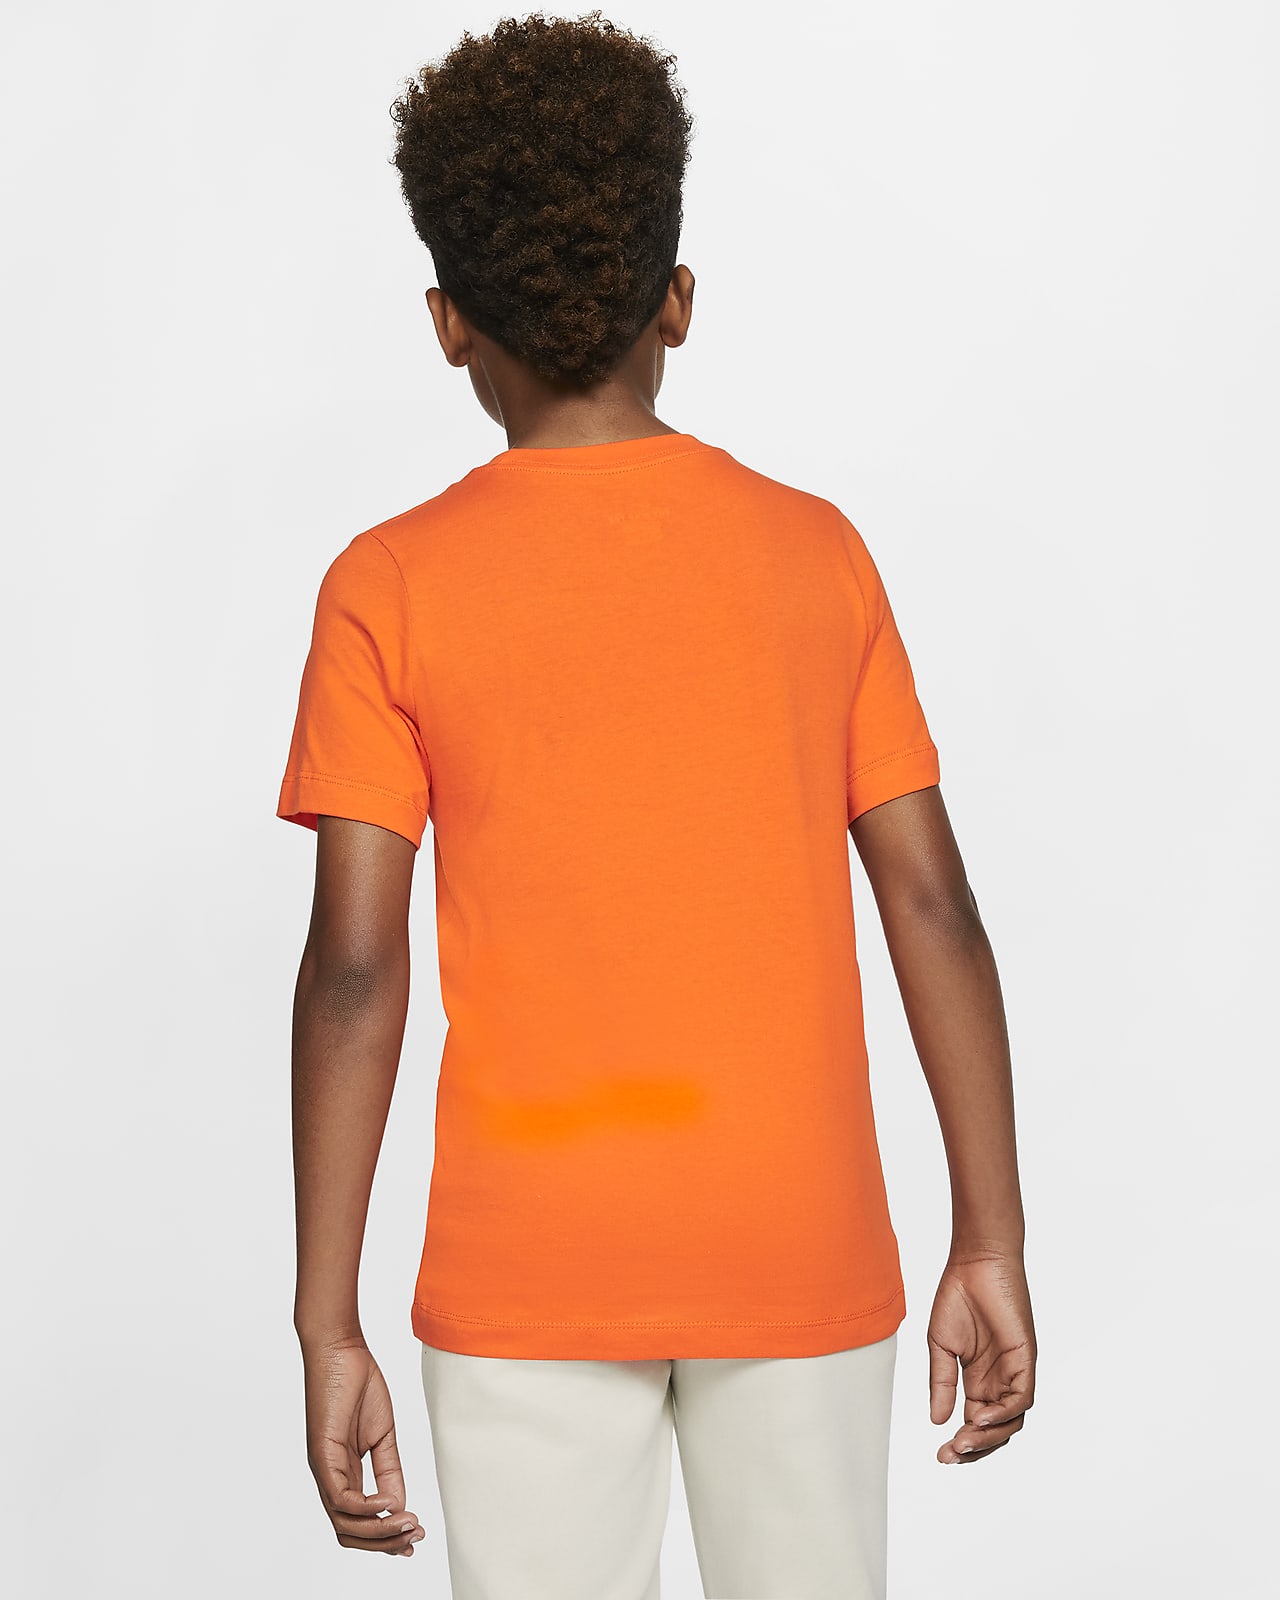 Zich verzetten tegen Overeenkomstig met Clancy Nederland Voetbalshirt voor kids. Nike NL